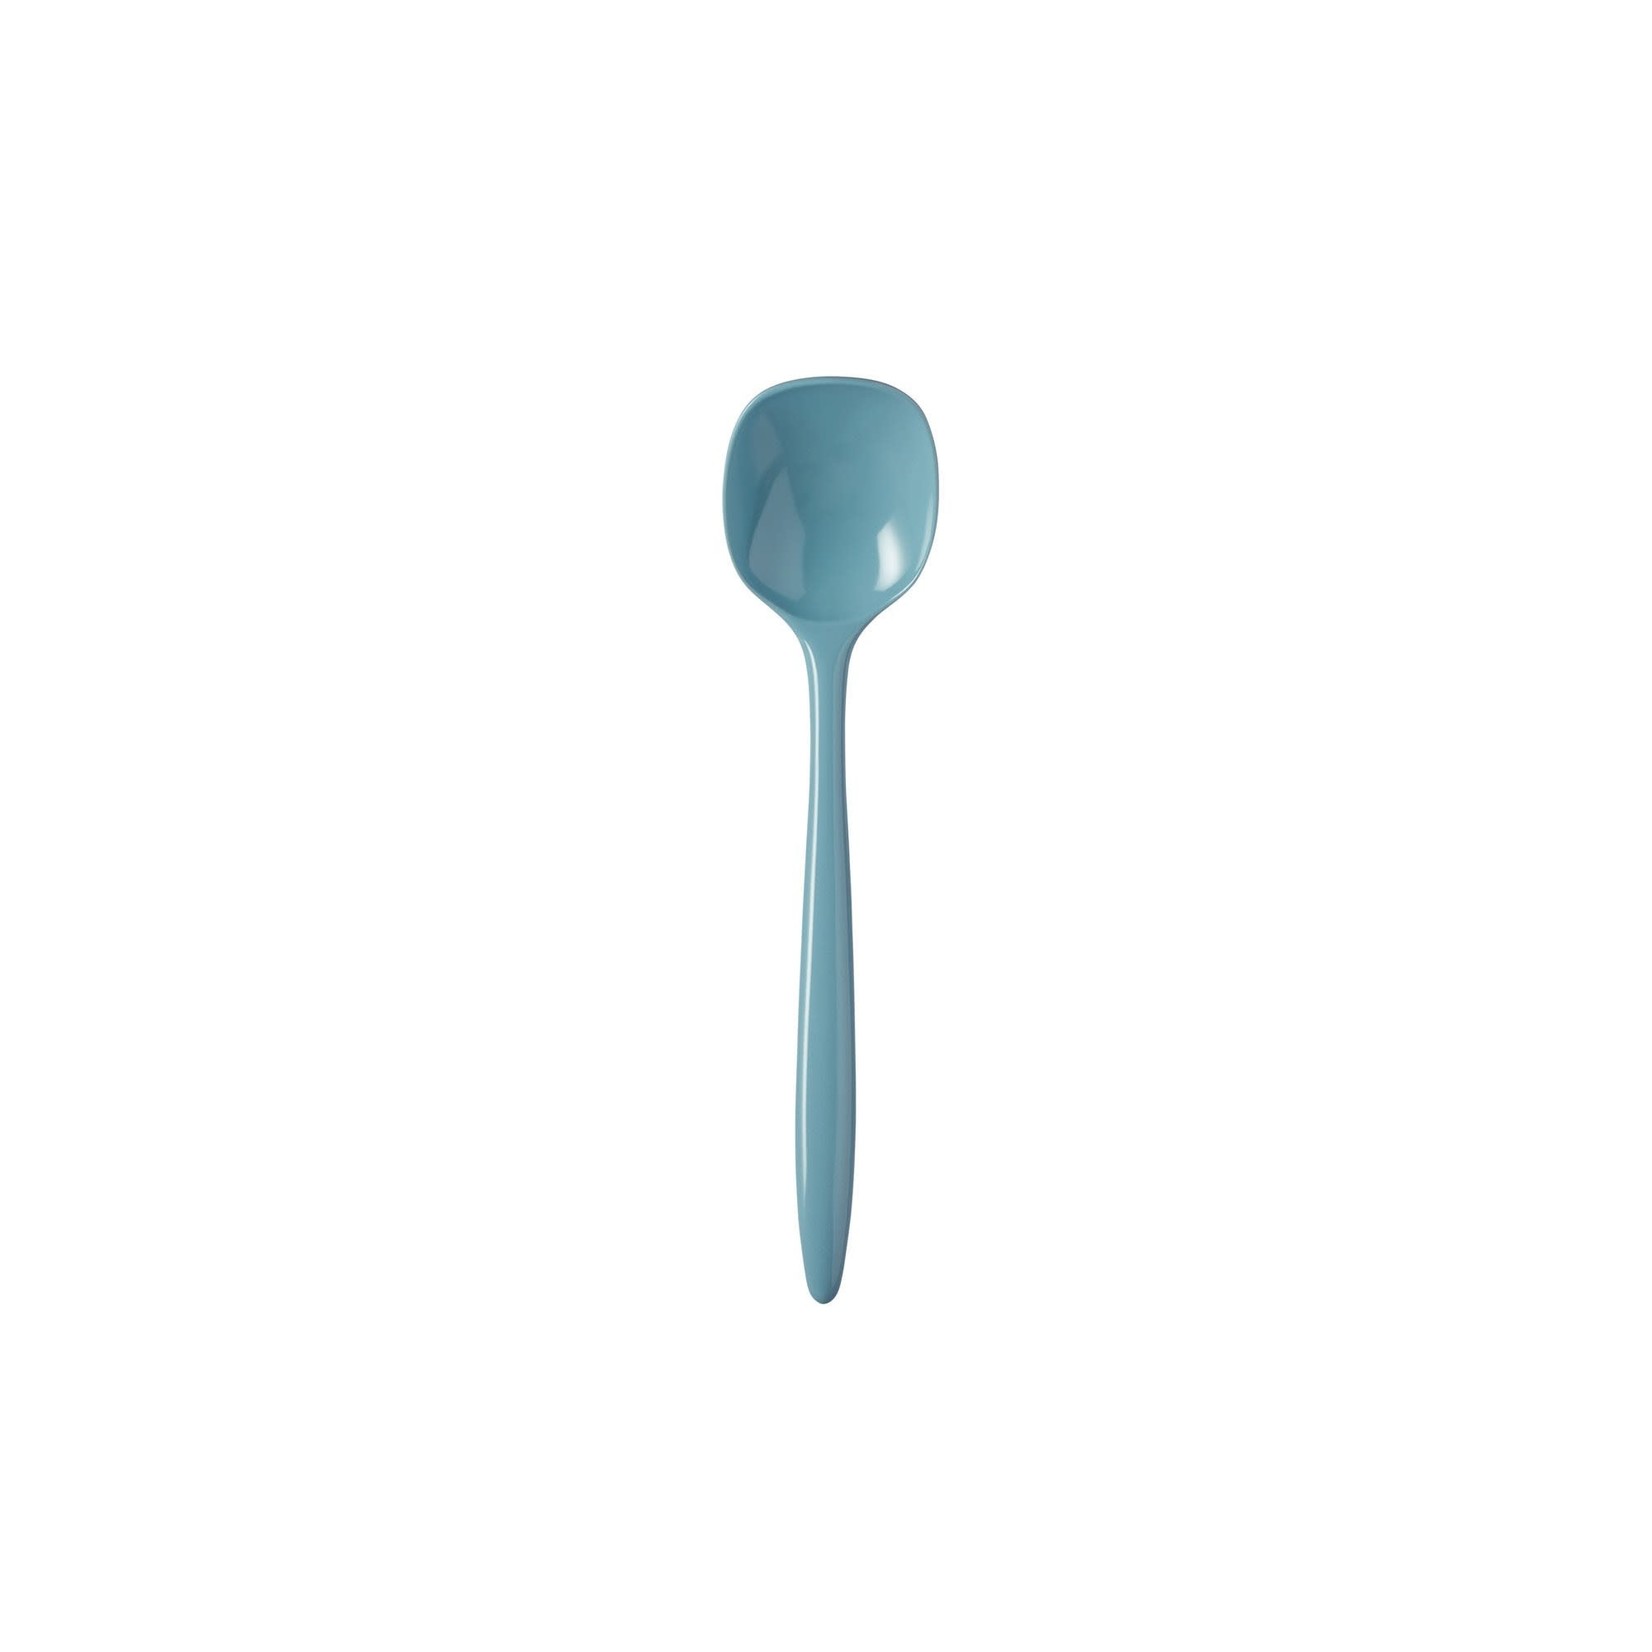 ROSTI ROSTI Spoon 29.5cm/11.5" Melamine Nordic Green